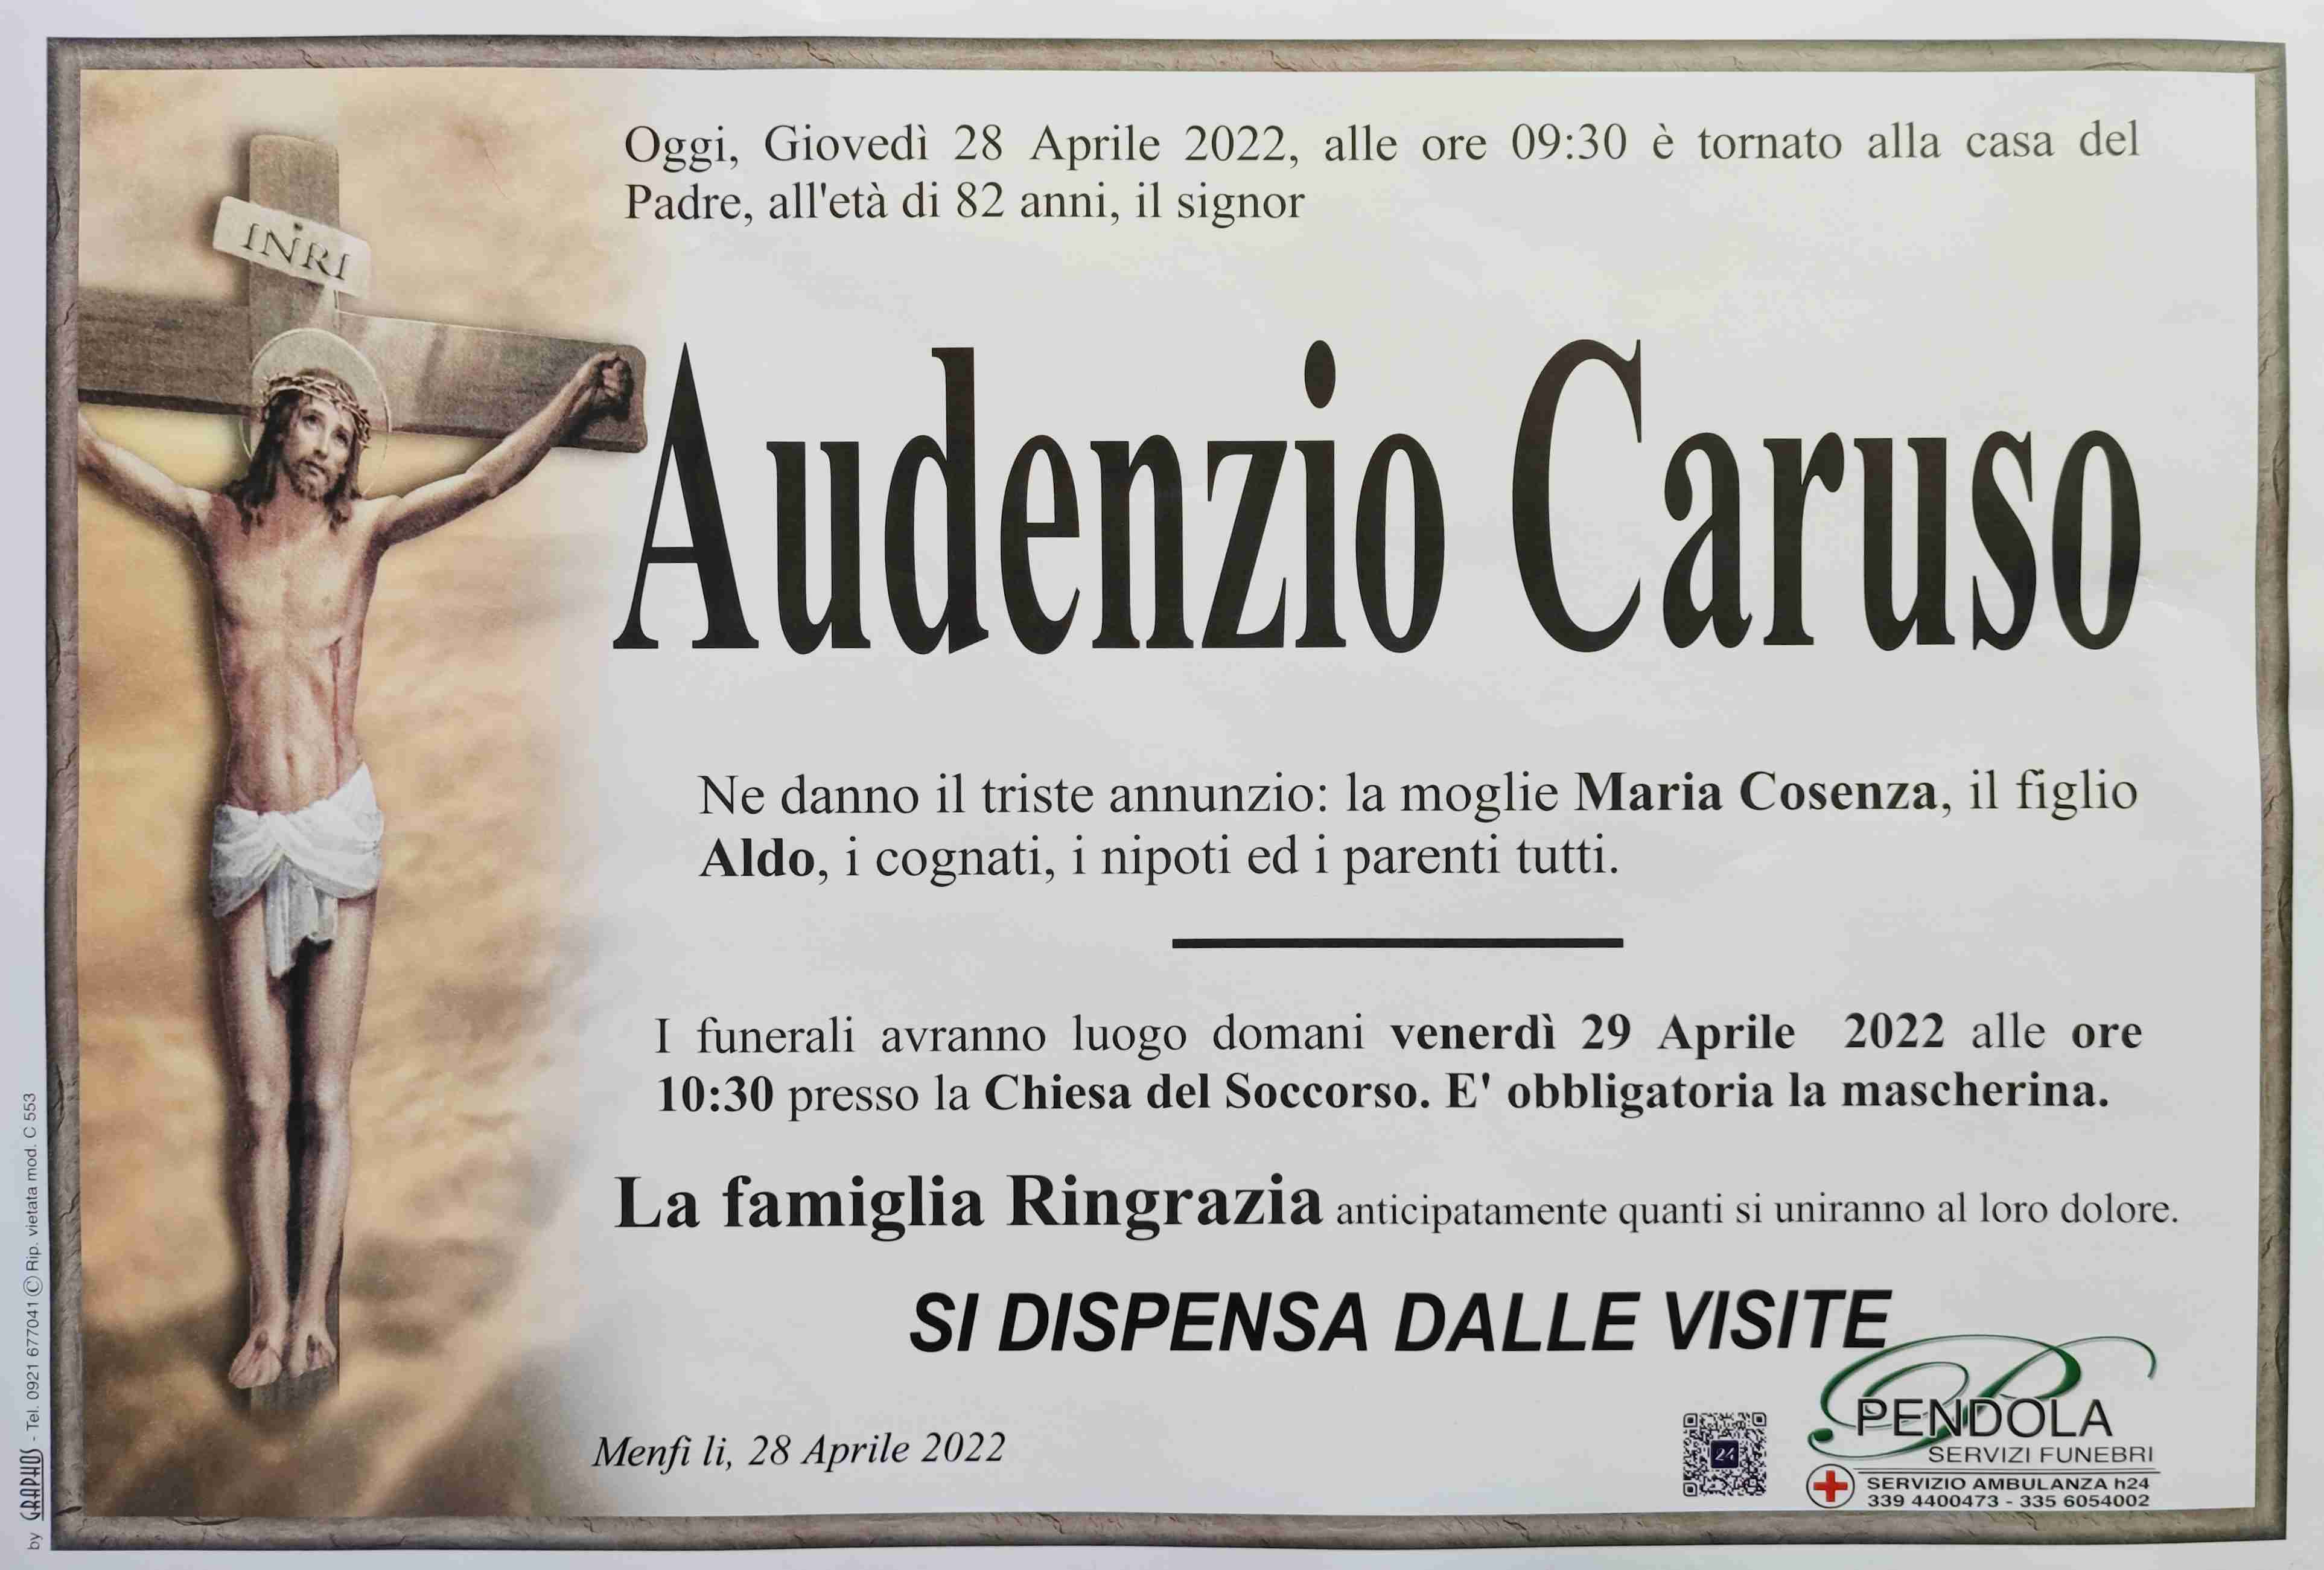 Audenzio Caruso